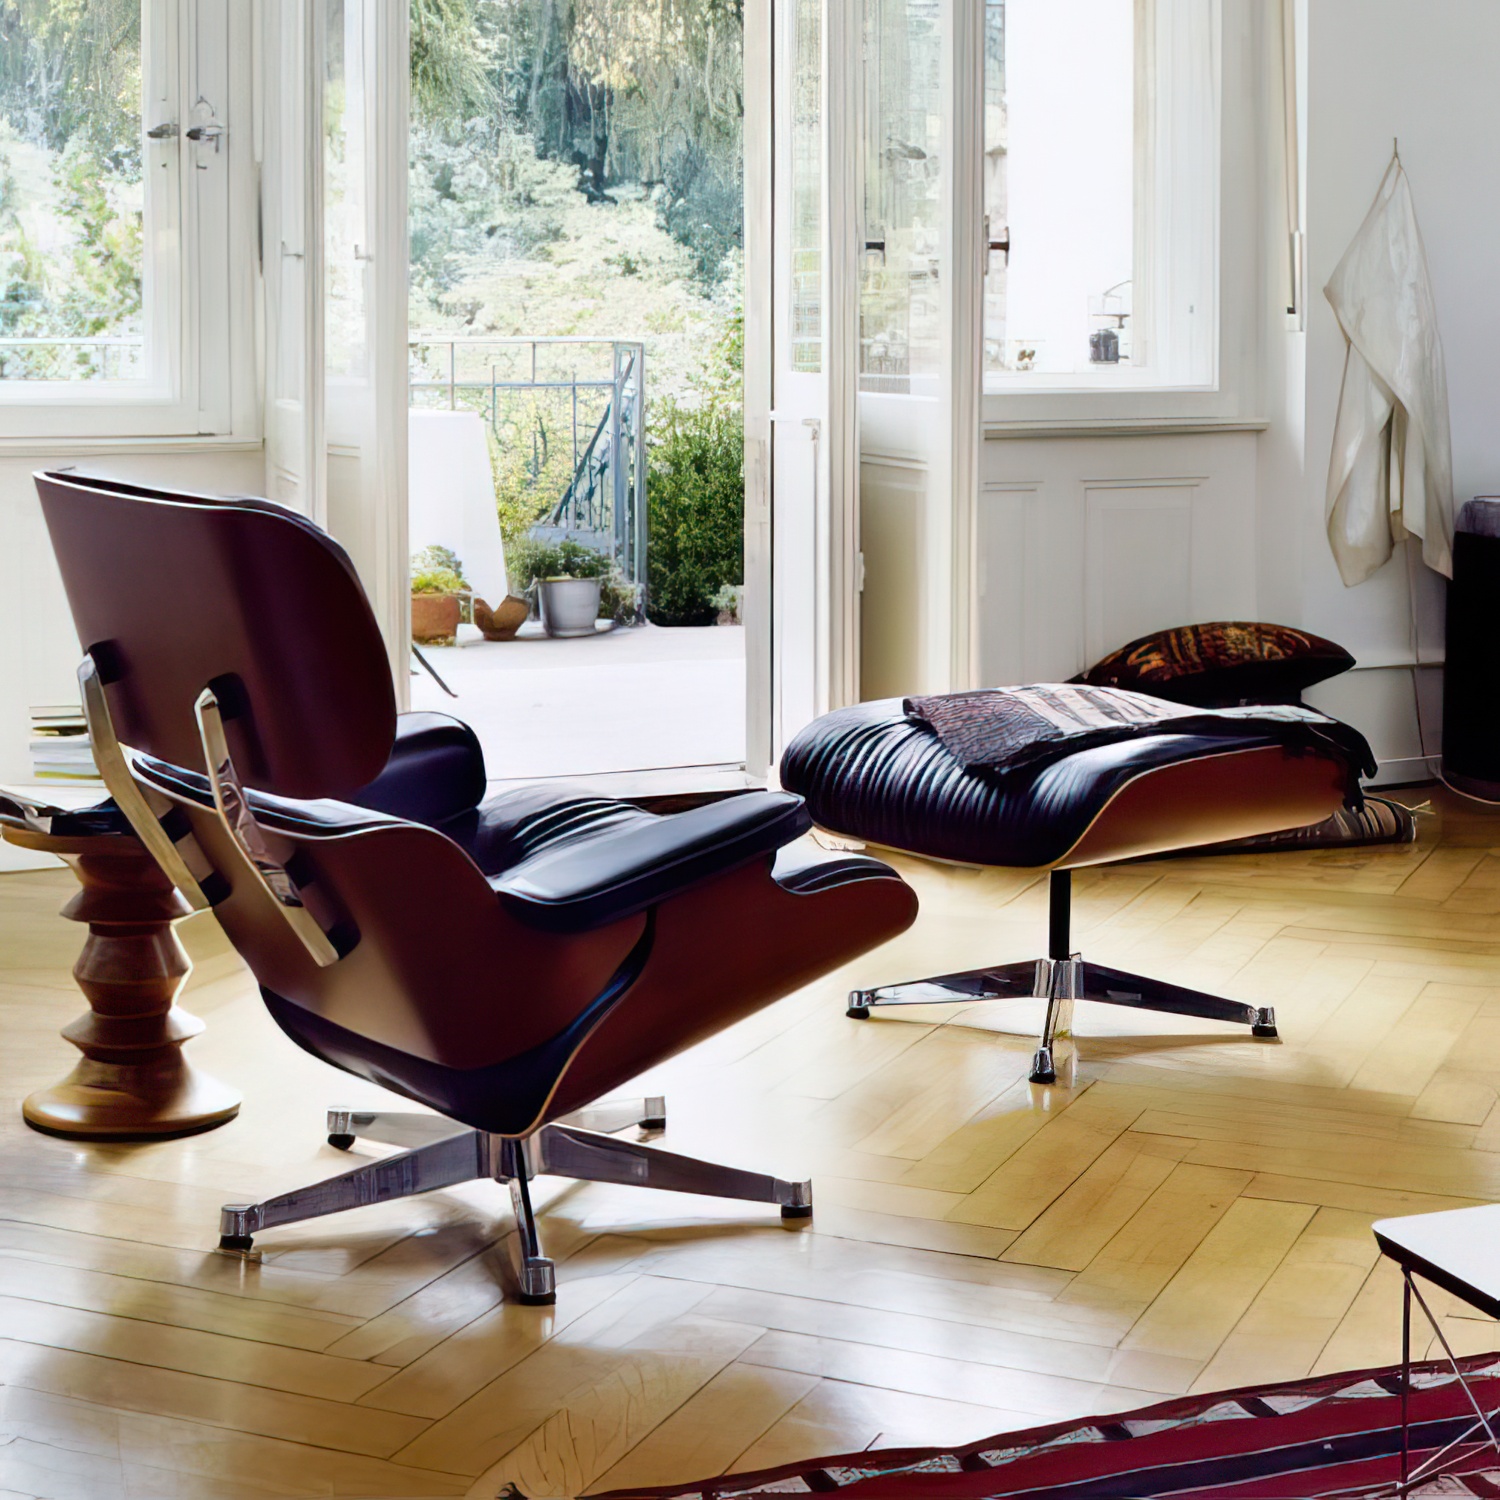 Lounge Chair und Ottoman 41213300 Amerikanischer Kirschbaum Gestell schwarz Leder in Braun